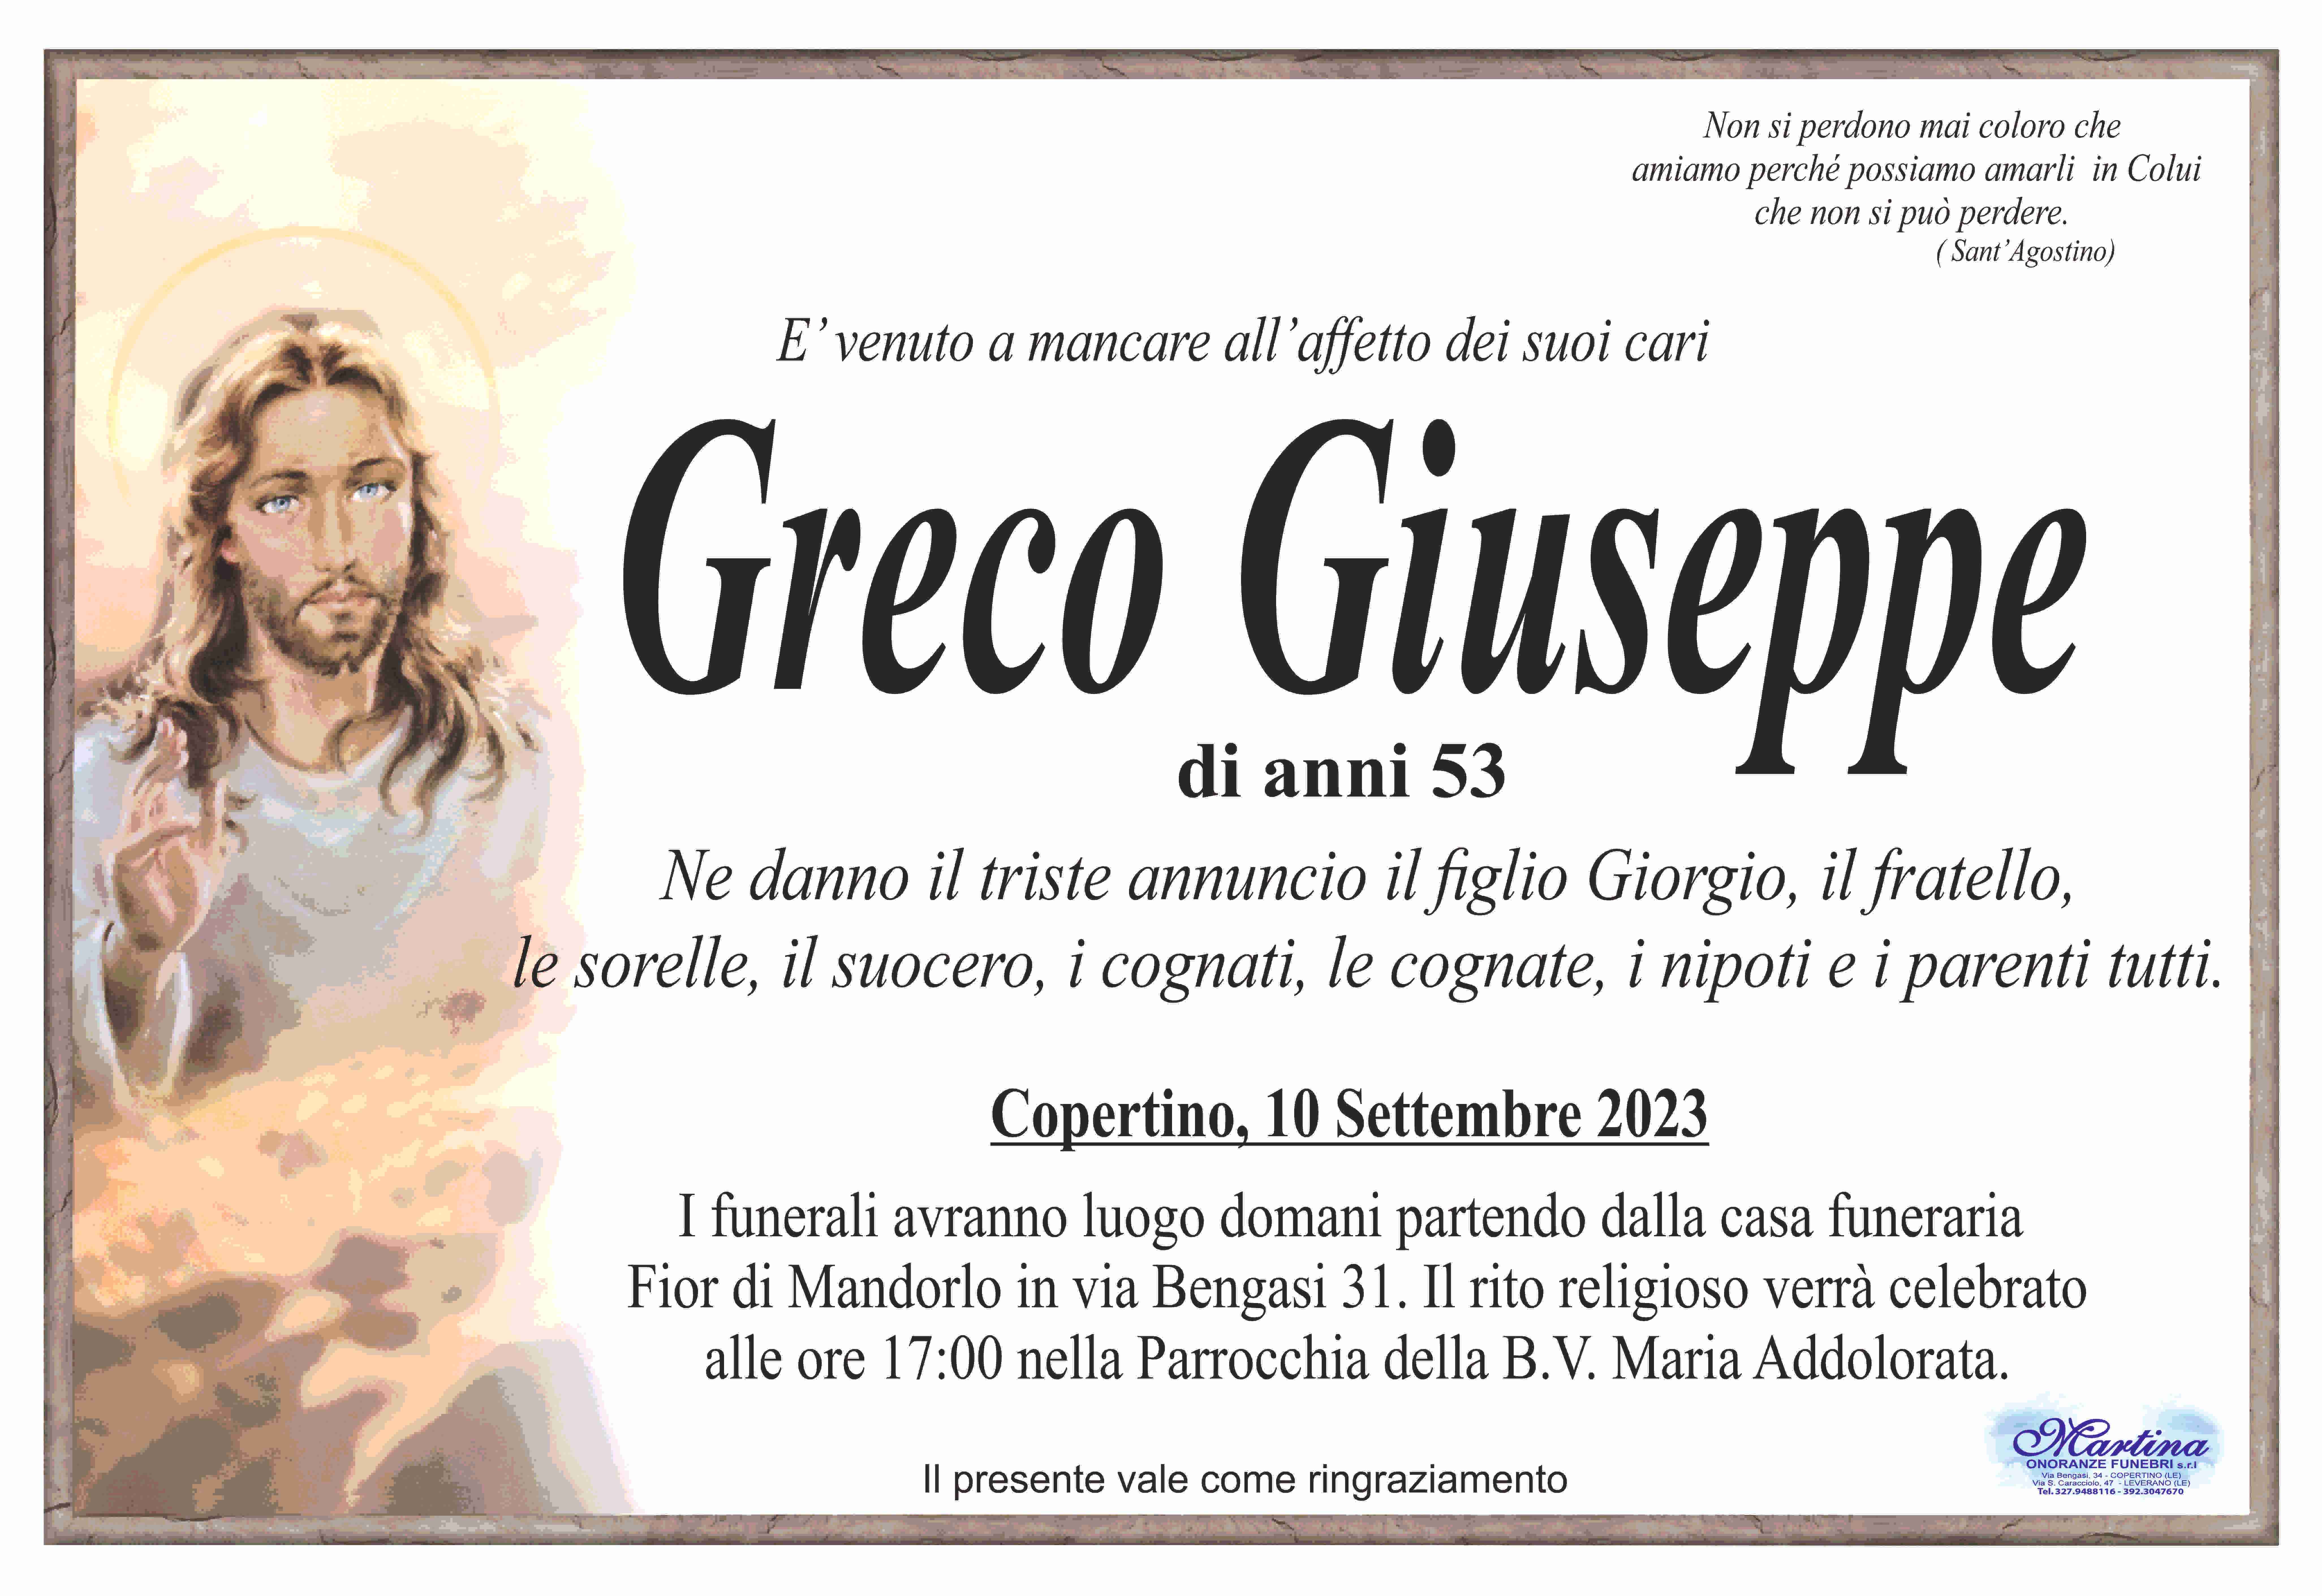 Giuseppe Greco